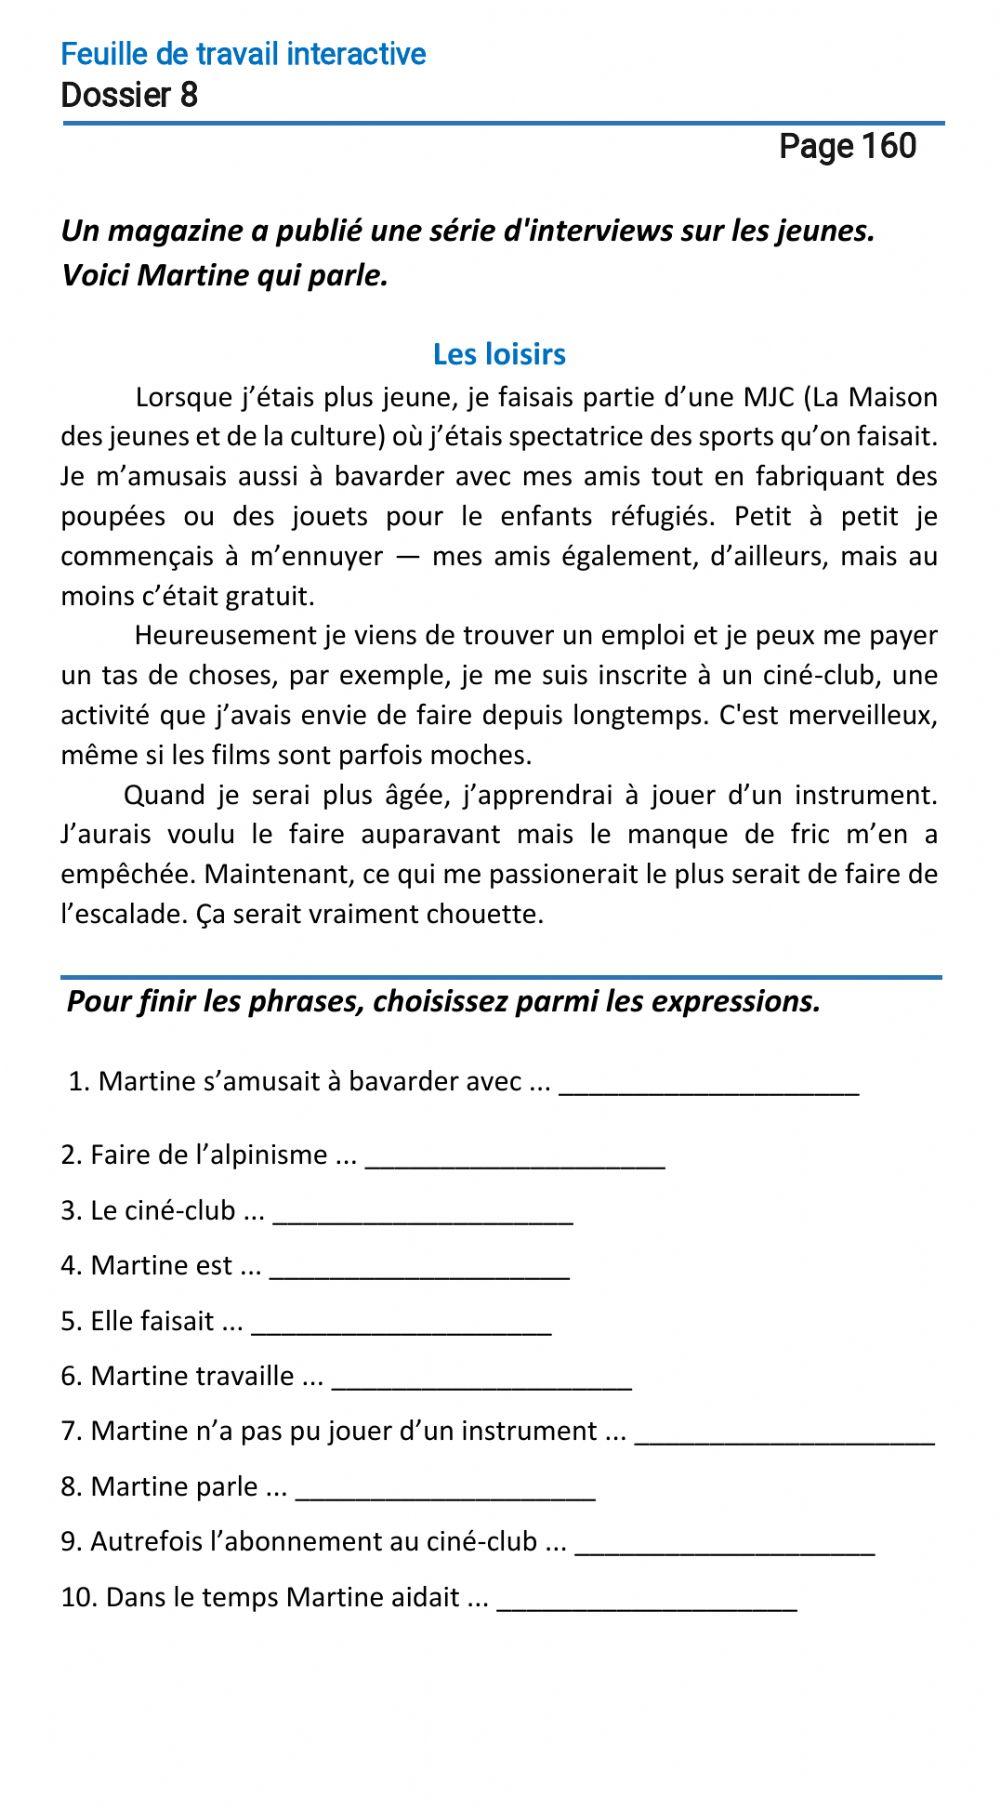 Le français-9 (повыш. ур.)-Dossier 8-Page 160